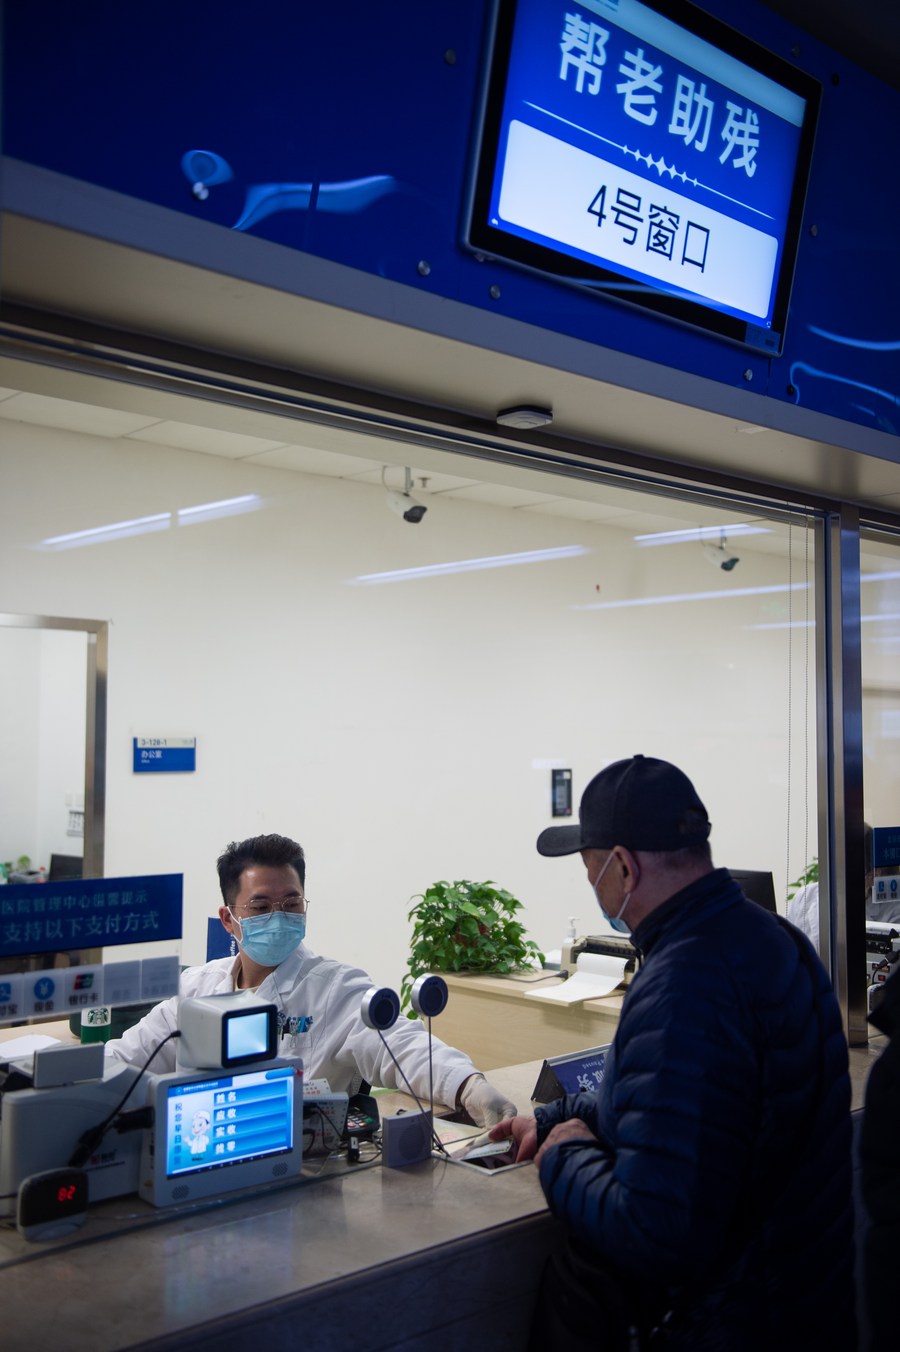 นโยบายจ่ายค่ารักษาพยาบาลของจีน เอื้อประโยชน์ต่อ 'ผู้อพยพต่างถิ่น' เพิ่มขึ้น